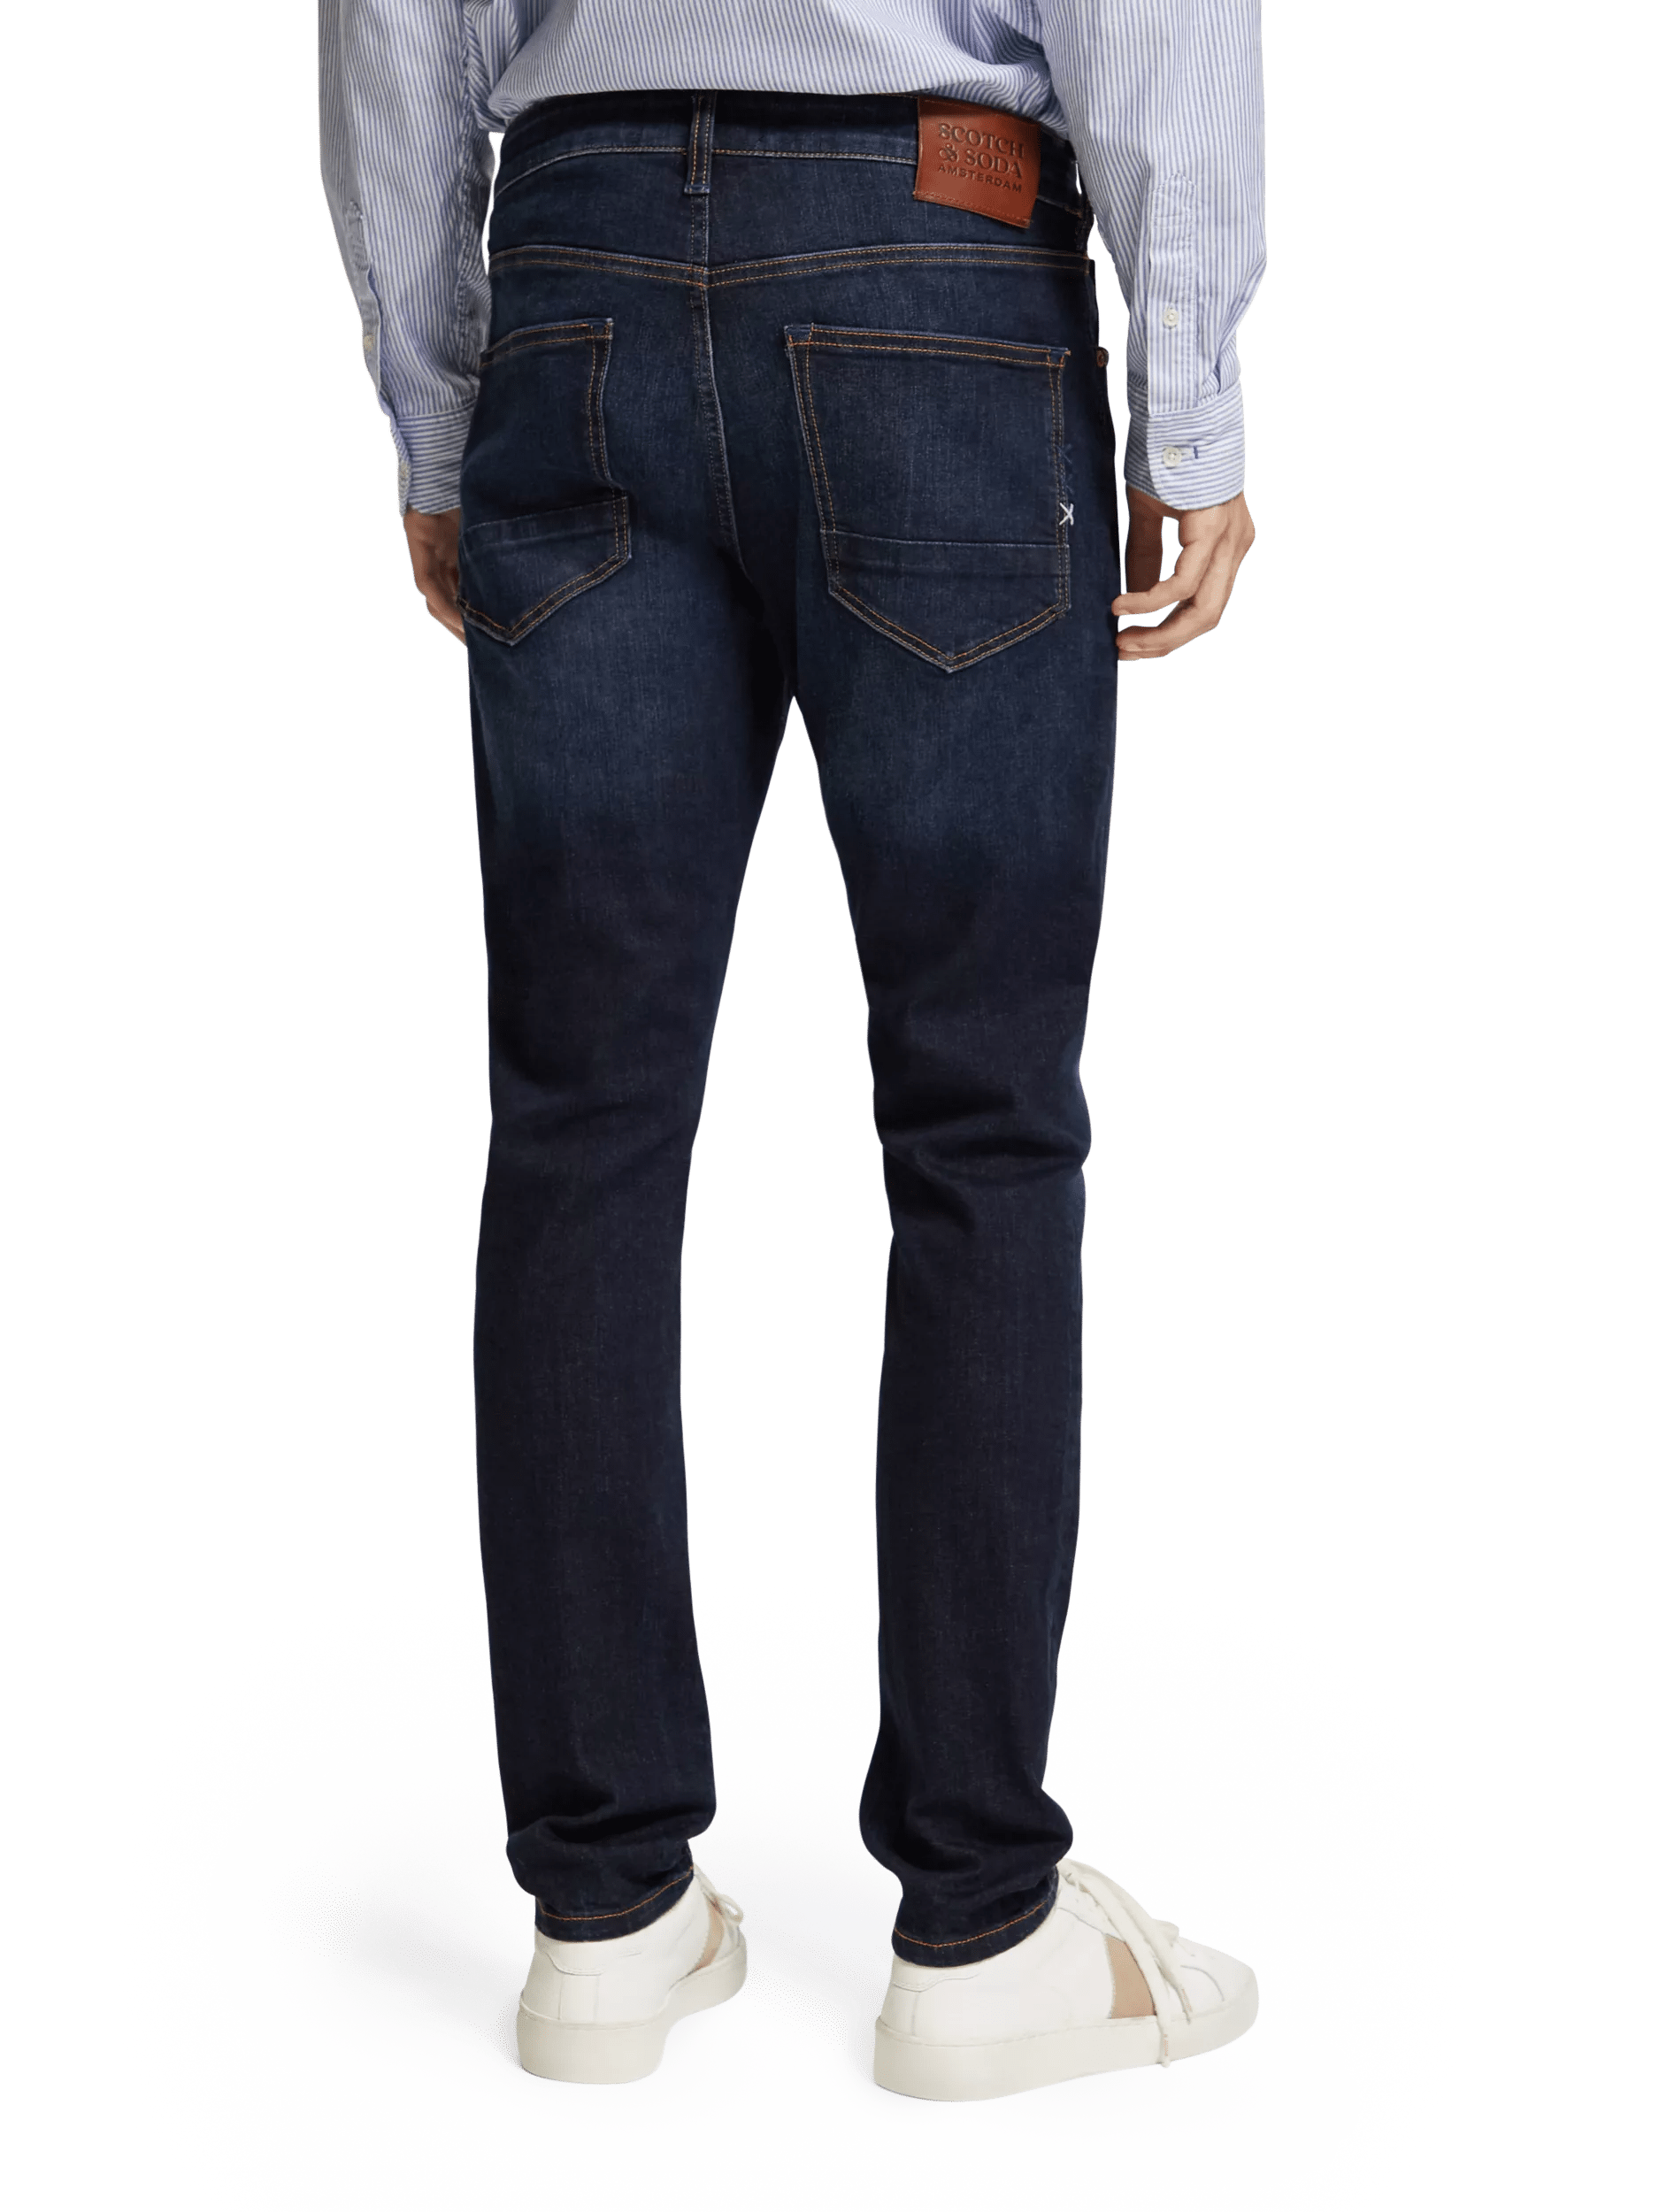 Scotch & Soda The Skim super-slim fit jeans FIT-BCK